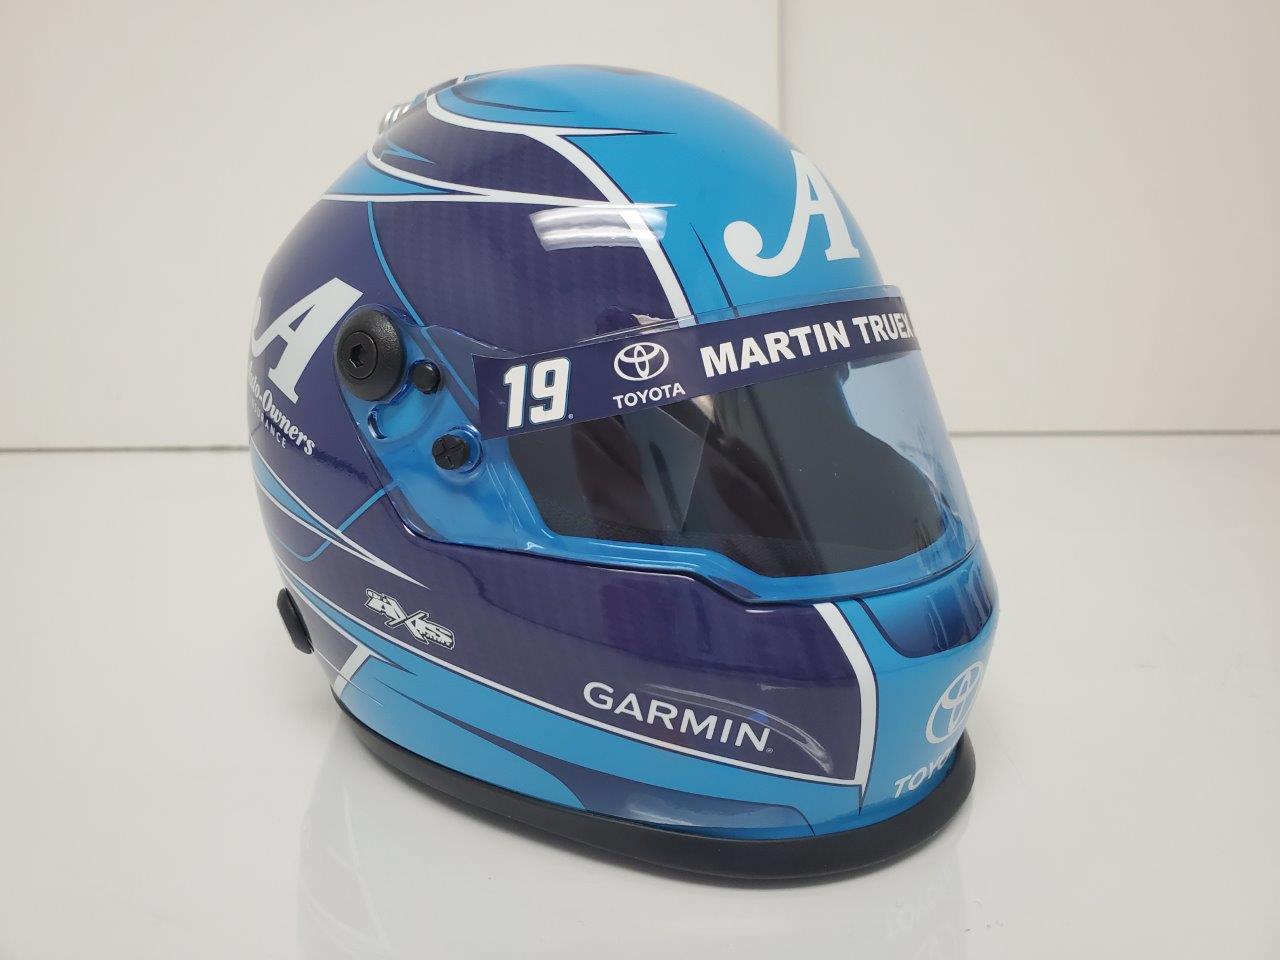 2019 Martin Truex Jr AutoOwners Insurance ~ Replica Full Size Helmet PREORDER